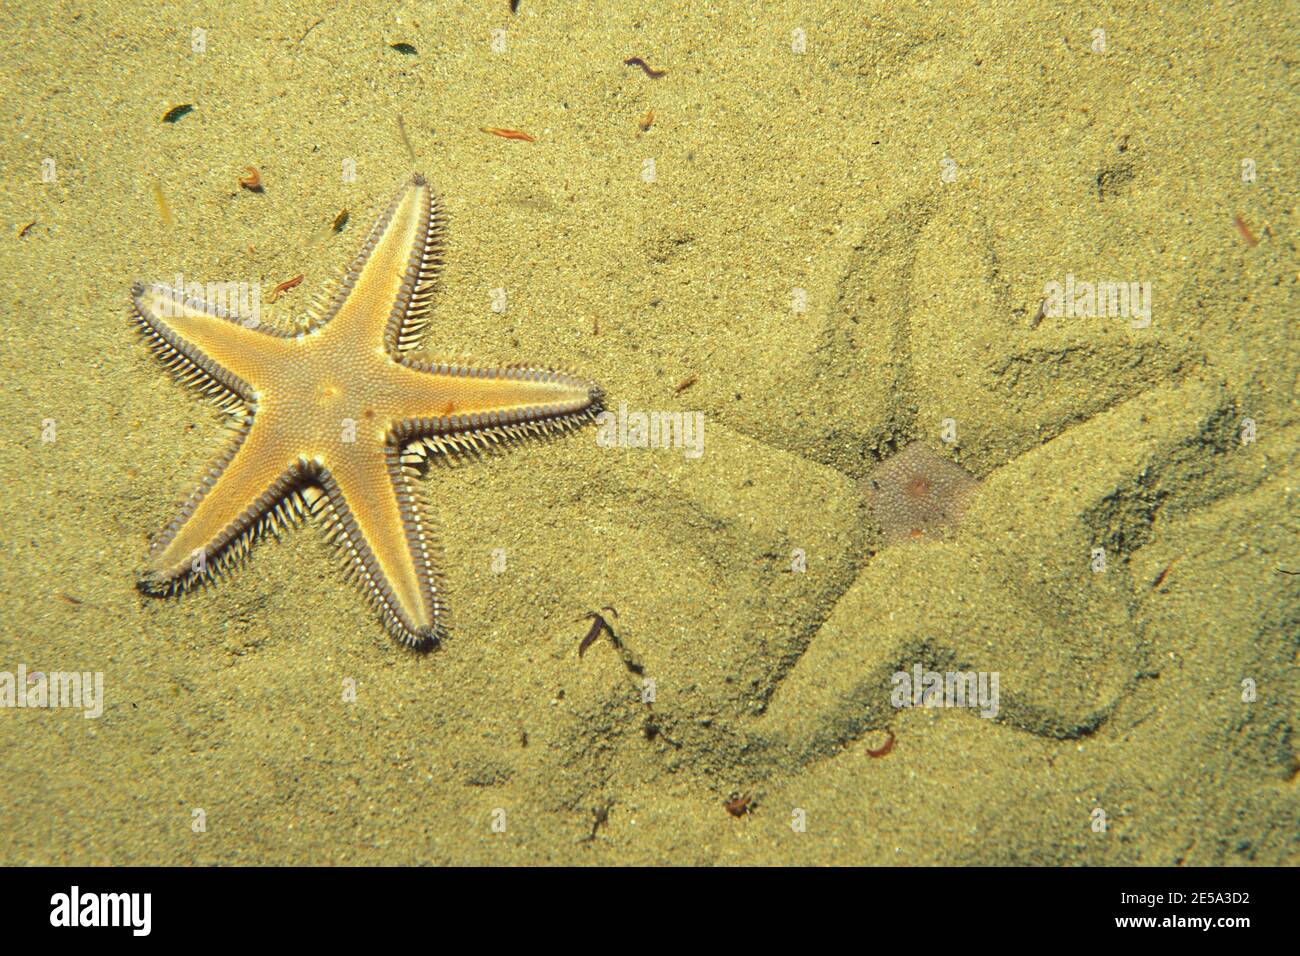 Astropecten platyacanthus, mediterranean sand star, burying itself, Mittelmeer-Kammssestern, beim Eingraben Stock Photo